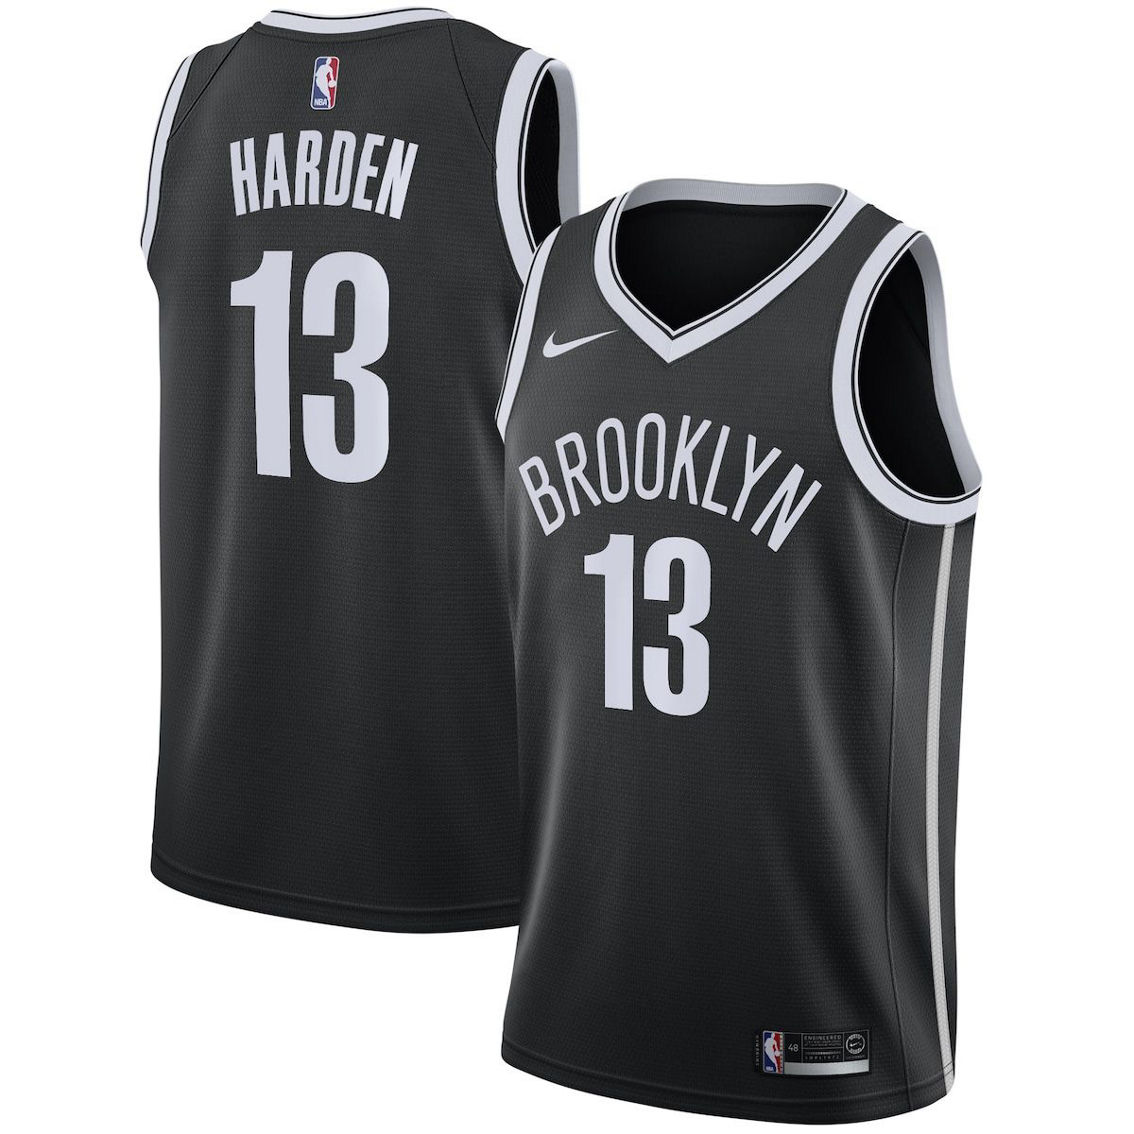 Nike Men's James Harden Black Brooklyn Nets 2020/21 Swingman Jersey - Icon Edition - Image 1 of 4